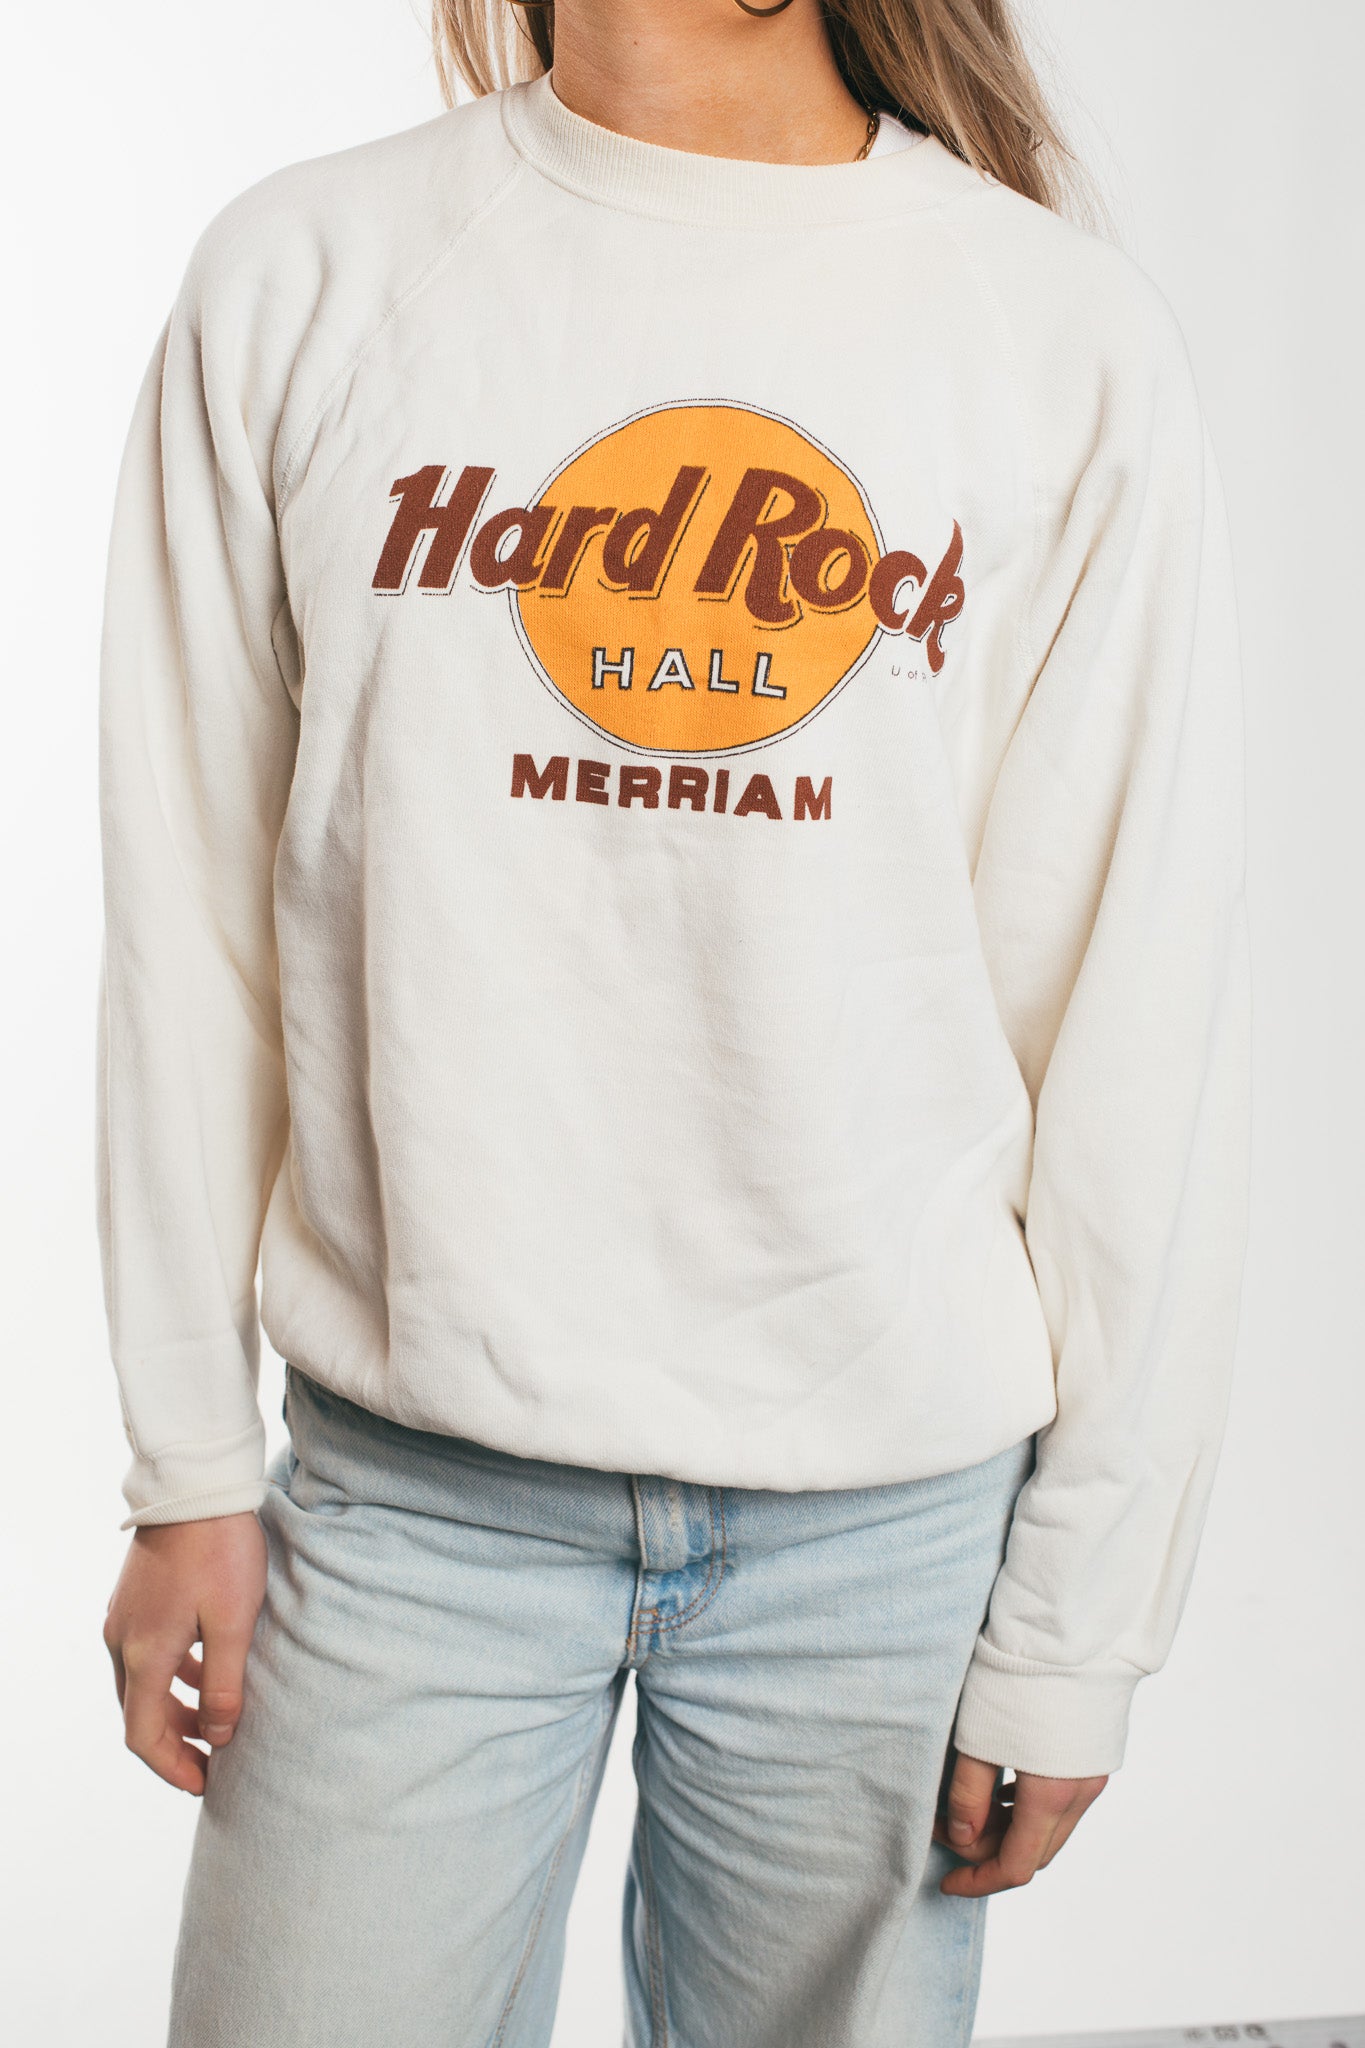 Hard Rock Hall - Sweatshirt